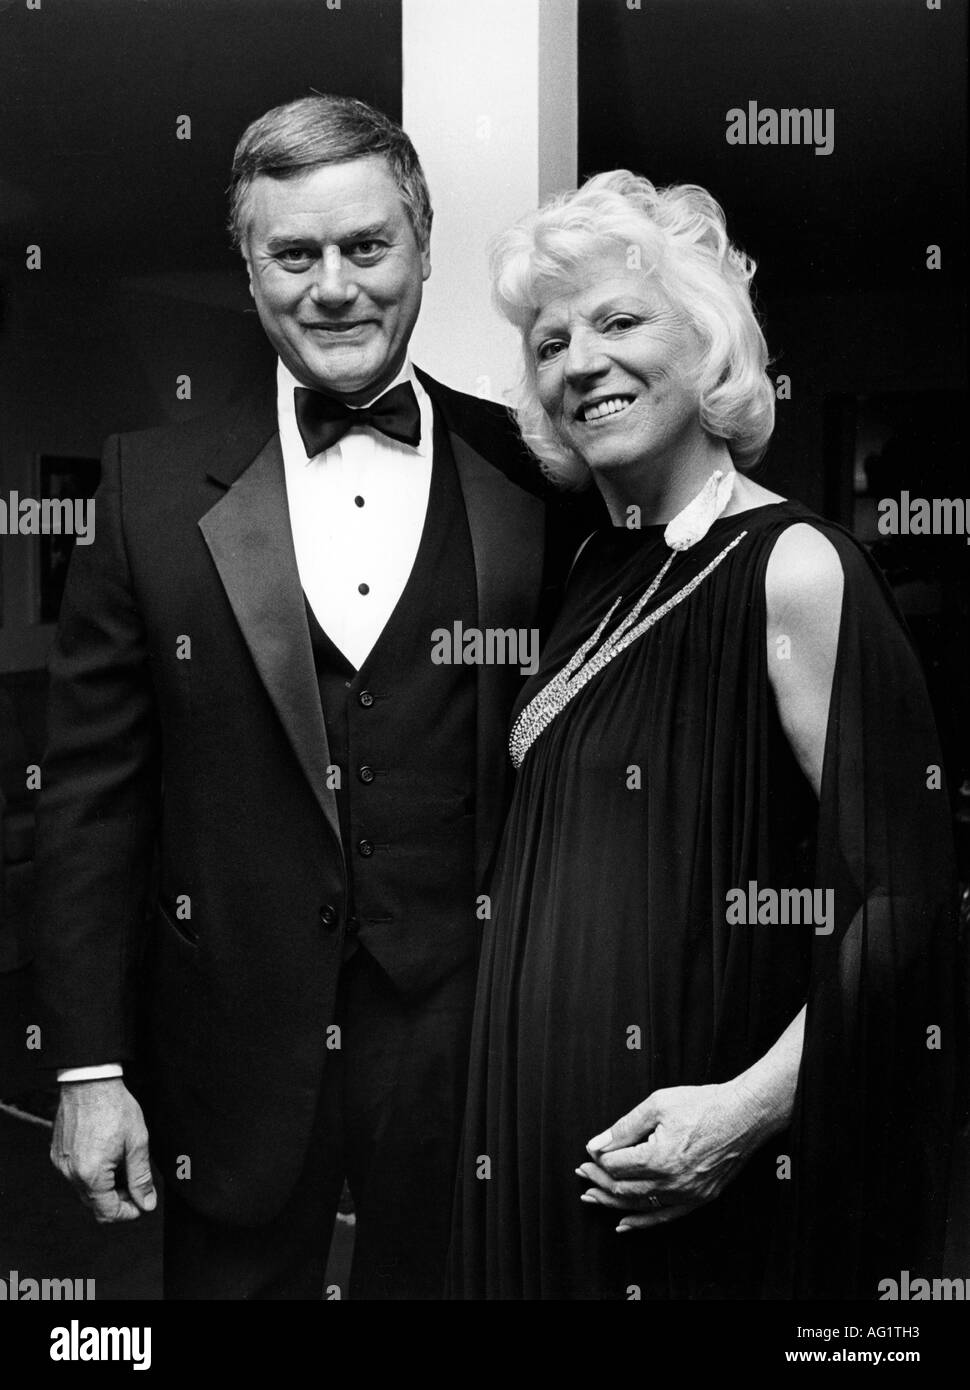 Hagman, Larry, 21.9.1931 - 23.11.2012, actor estadounidense, con la esposa Maj Axelsson, de media duración, hotel Four Seasons, Munich, 15.4.1983, Foto de stock